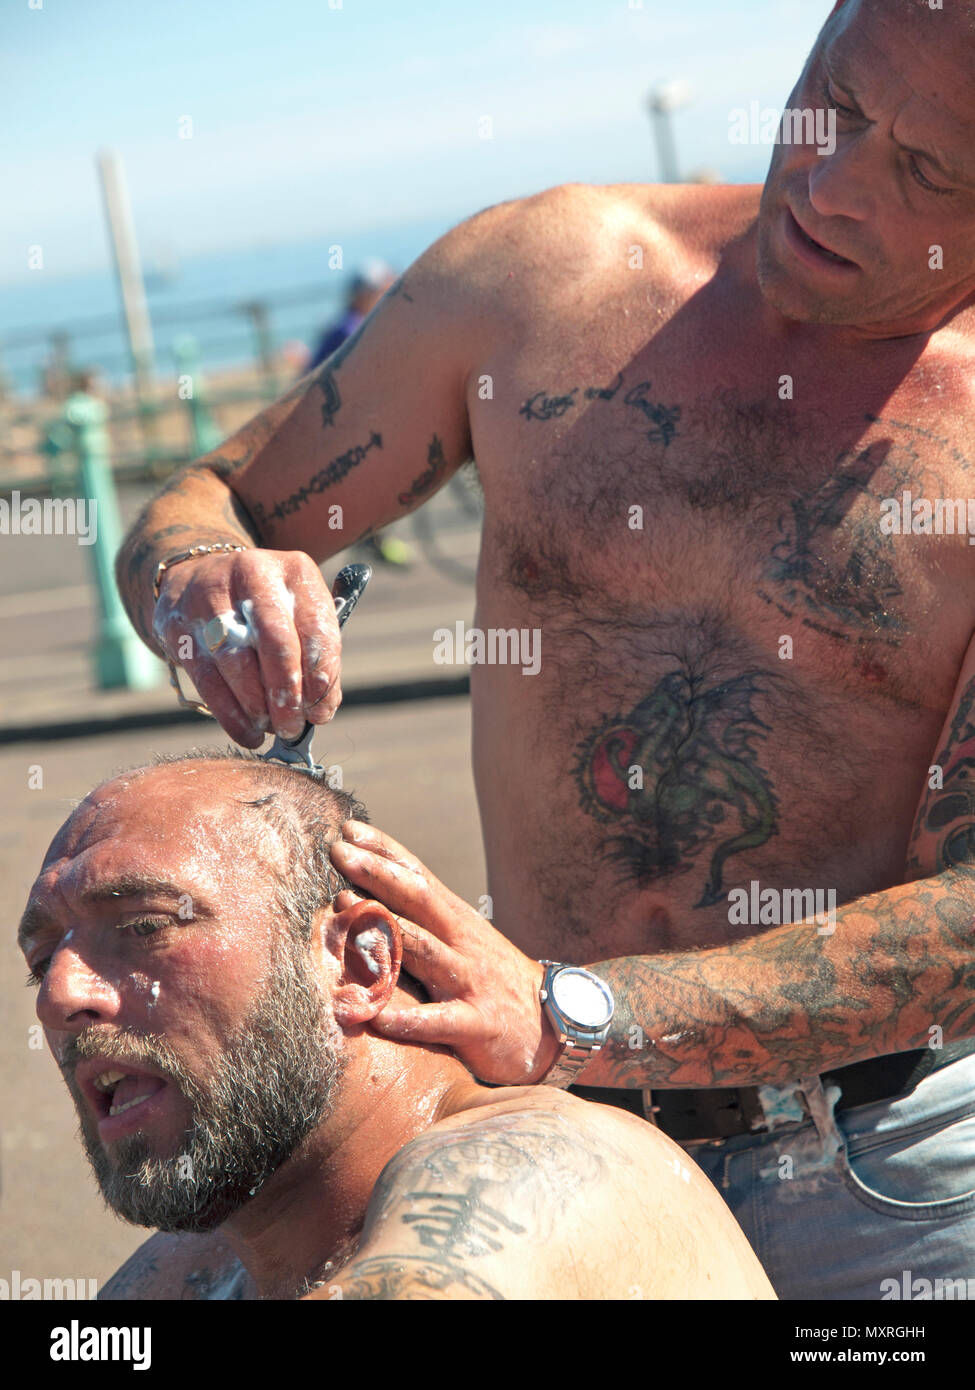 Lors d'une réunion de skinhead à Brighton un homme a sa tête rasée Banque D'Images